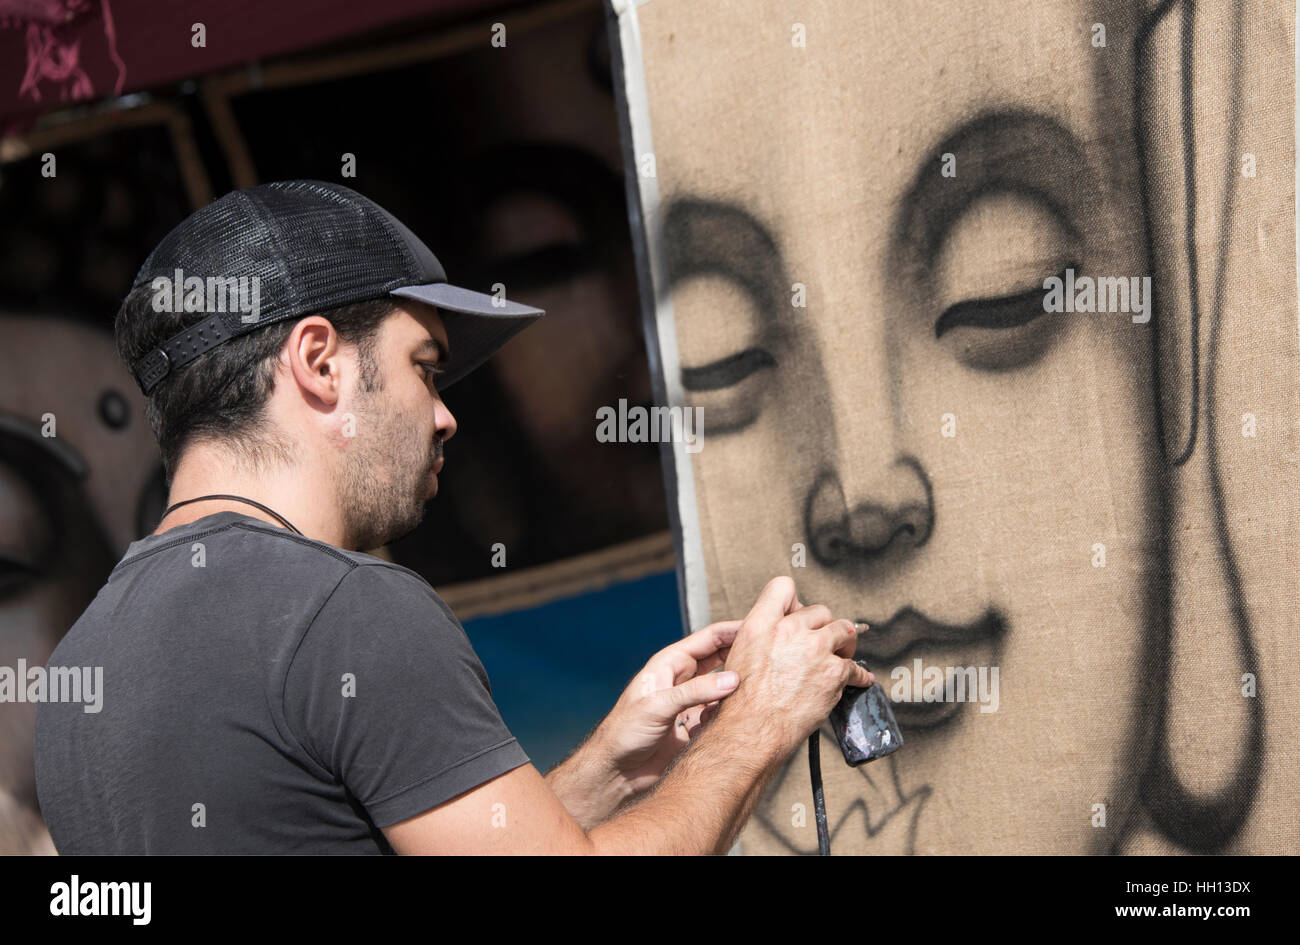 Artista callejero en el trabajo con pintura en aerosol acrílico Foto de stock